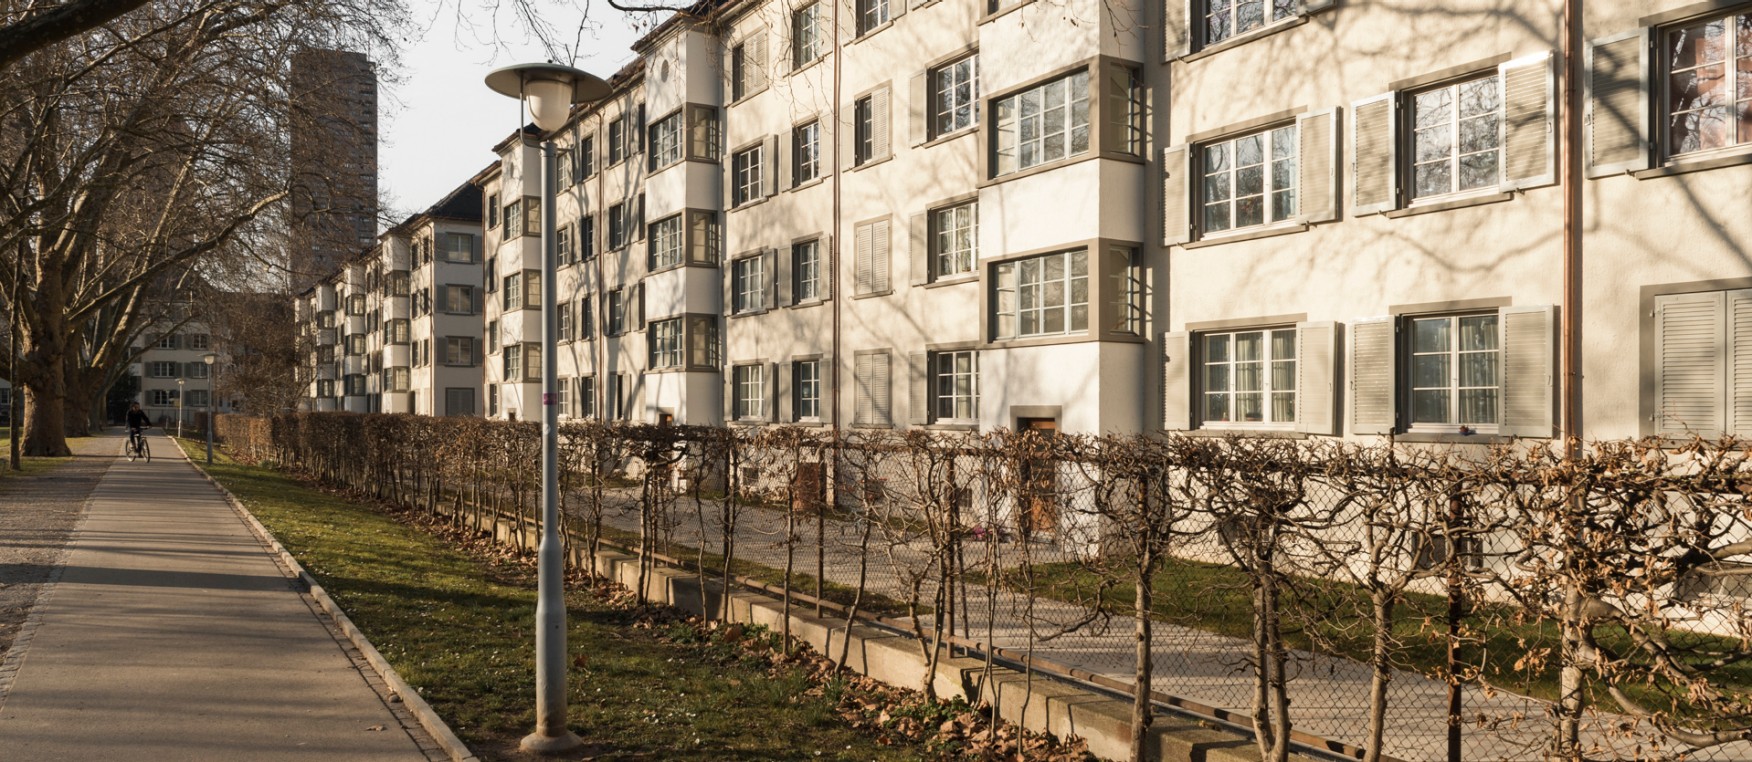 Die Wohnsiedlung Bullingerhof mit 224 Wohnungen umschliesst einen Grünraum